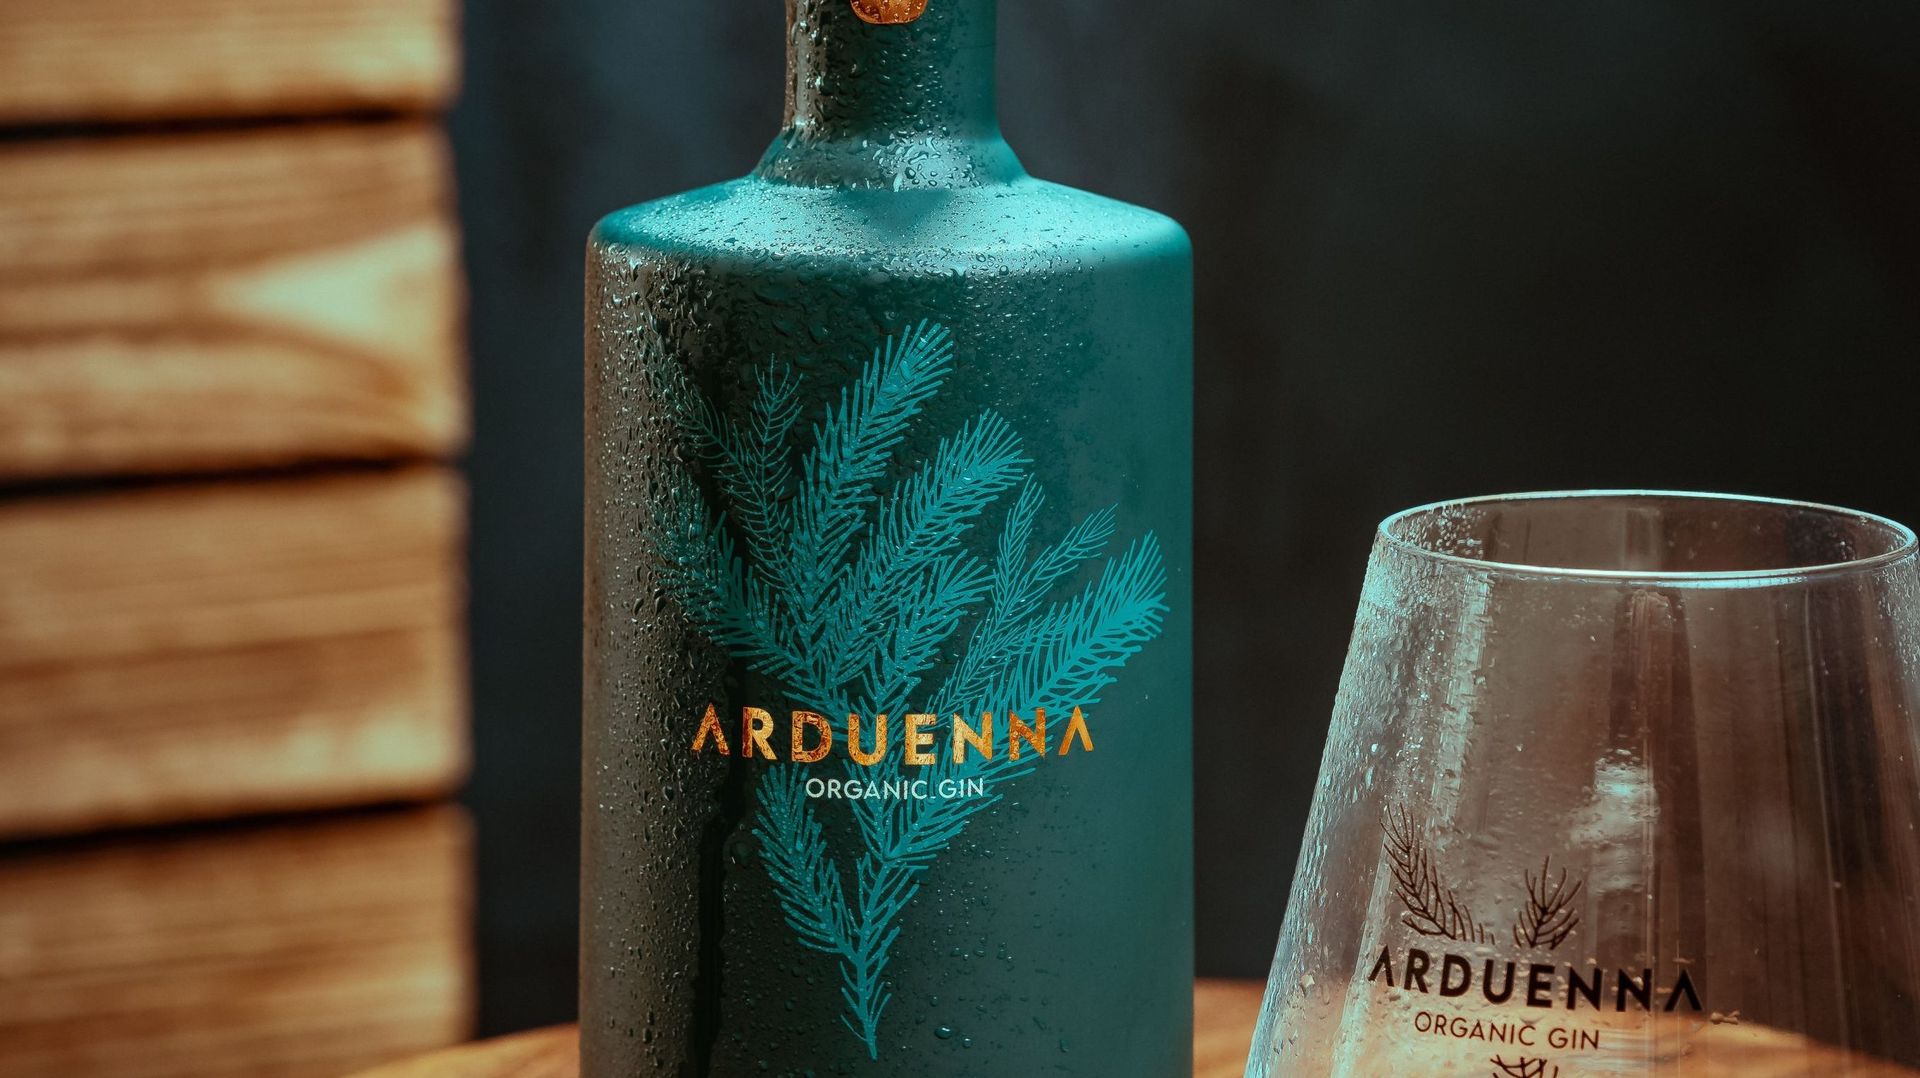 Le gin "Arduenna" 100% ardennais et bio